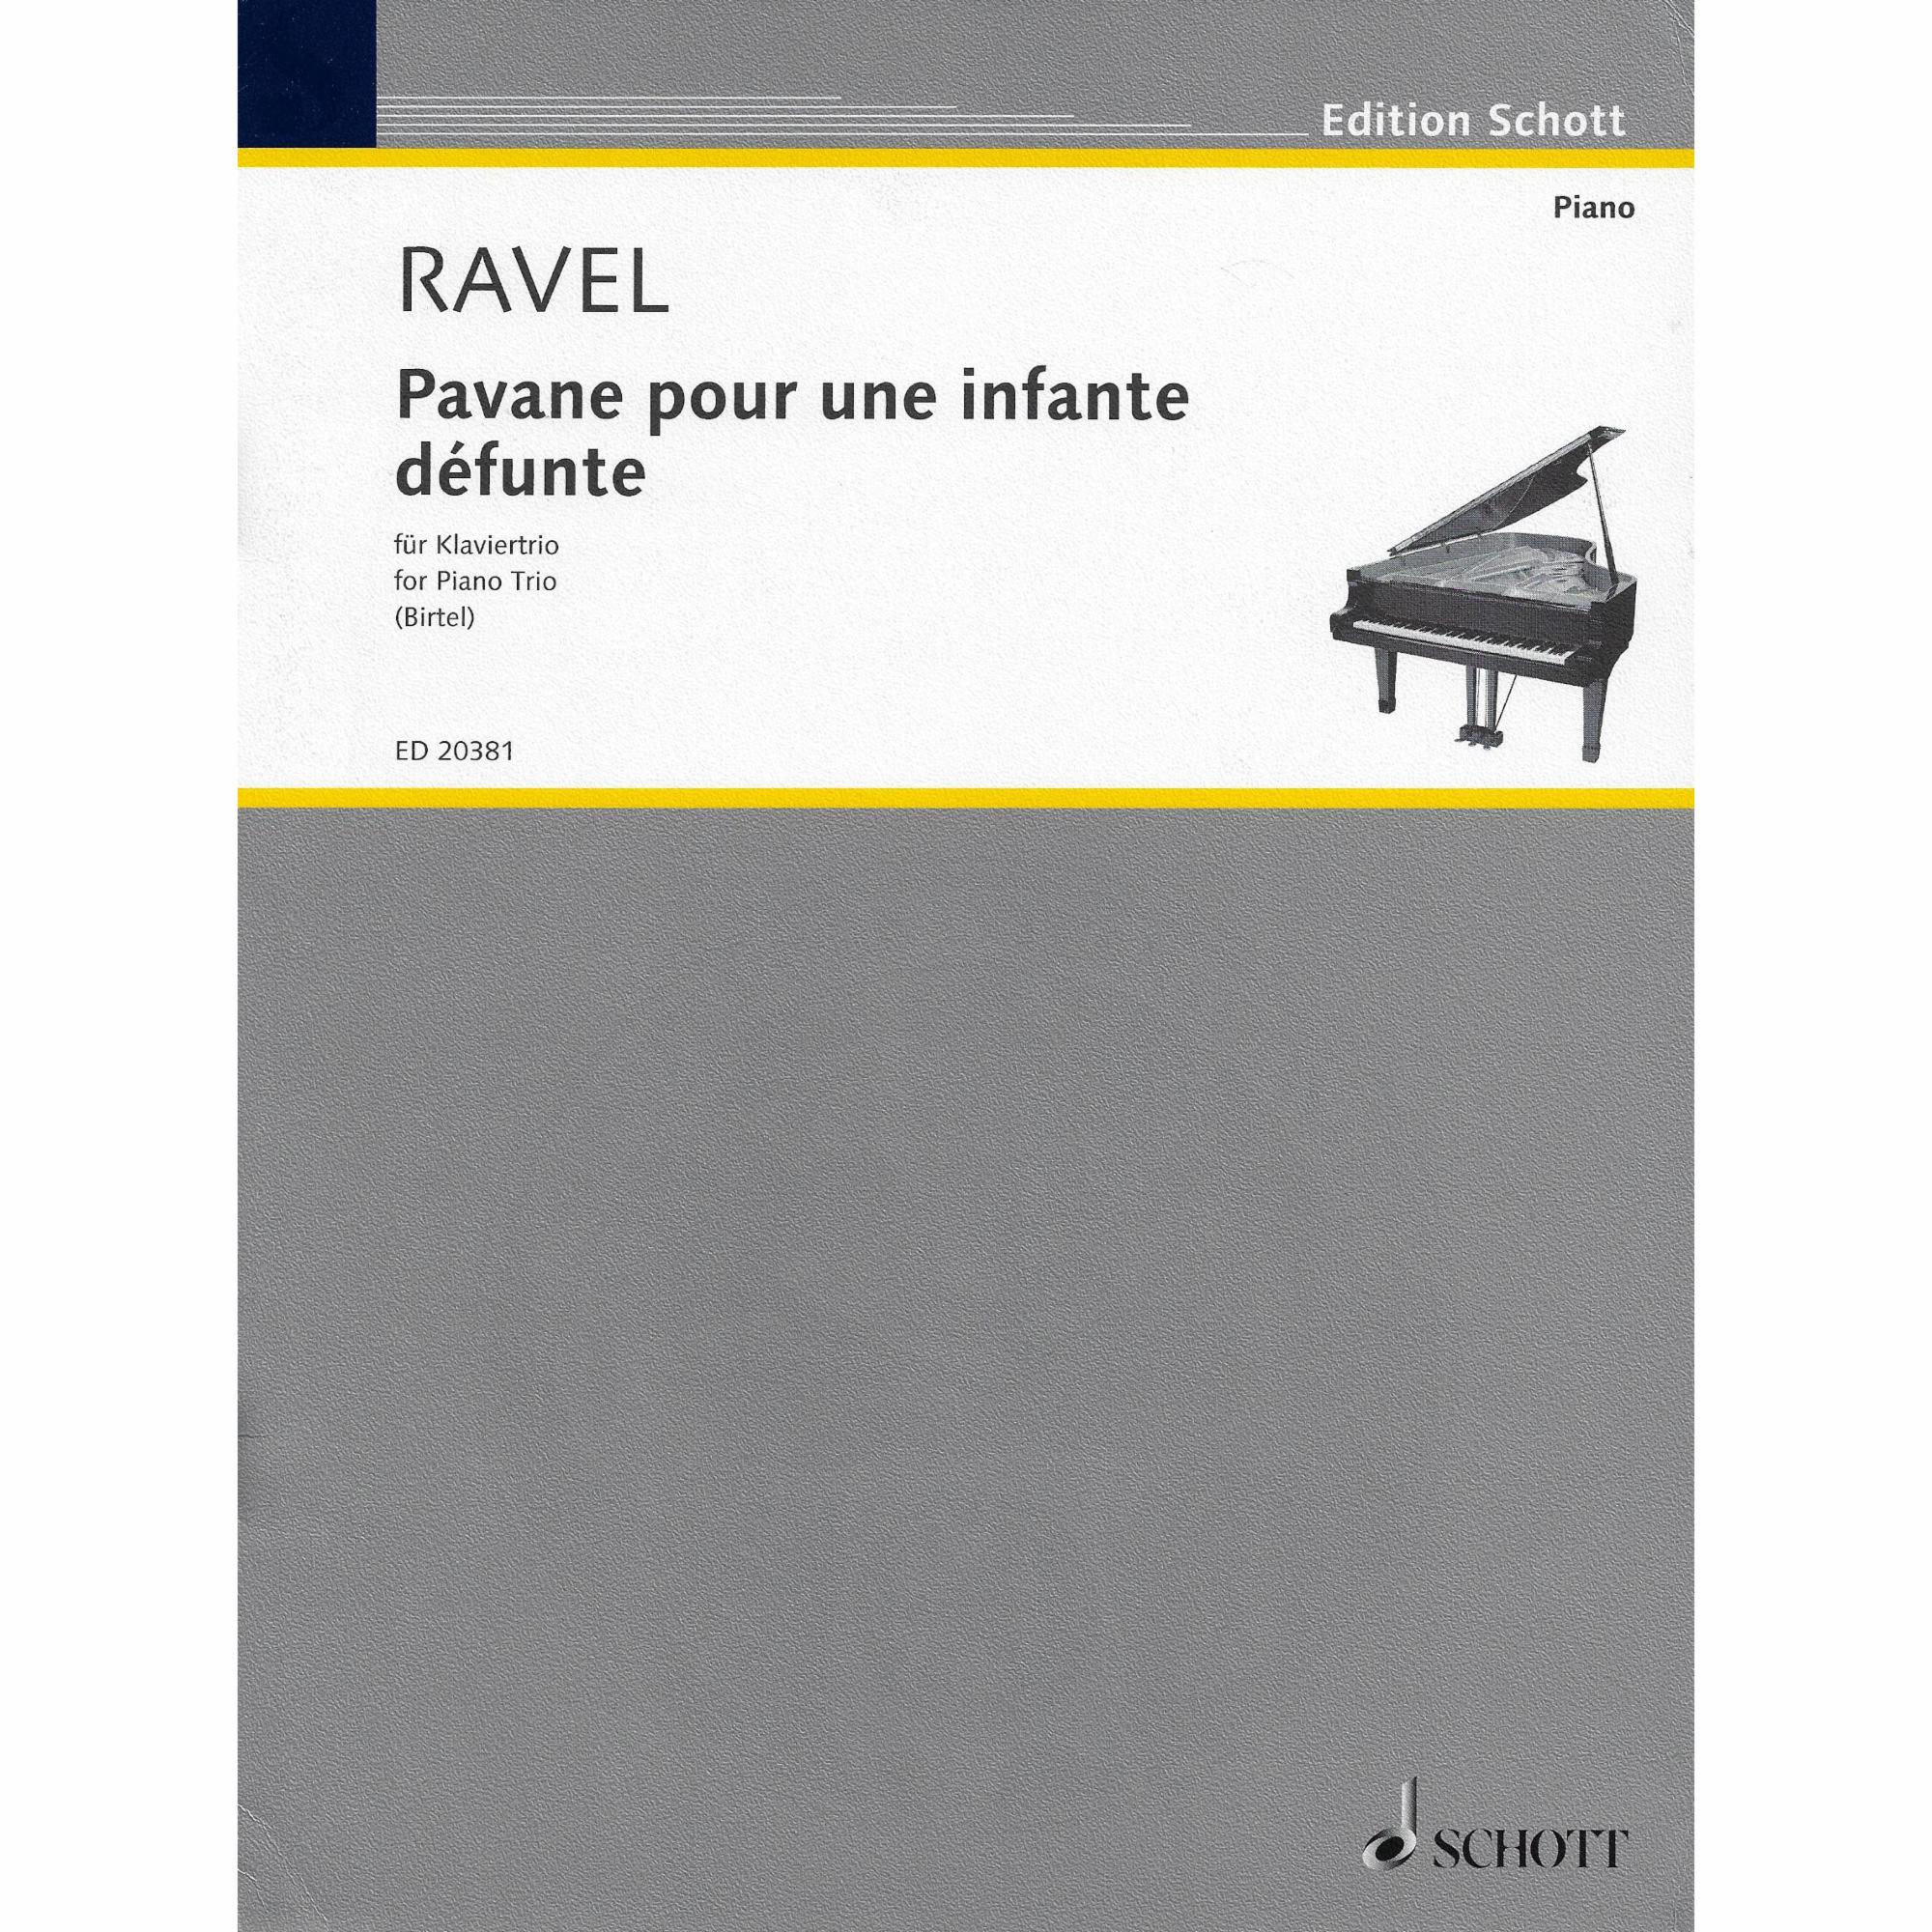 Ravel -- Pavane pour une infante defunte for Piano Trio